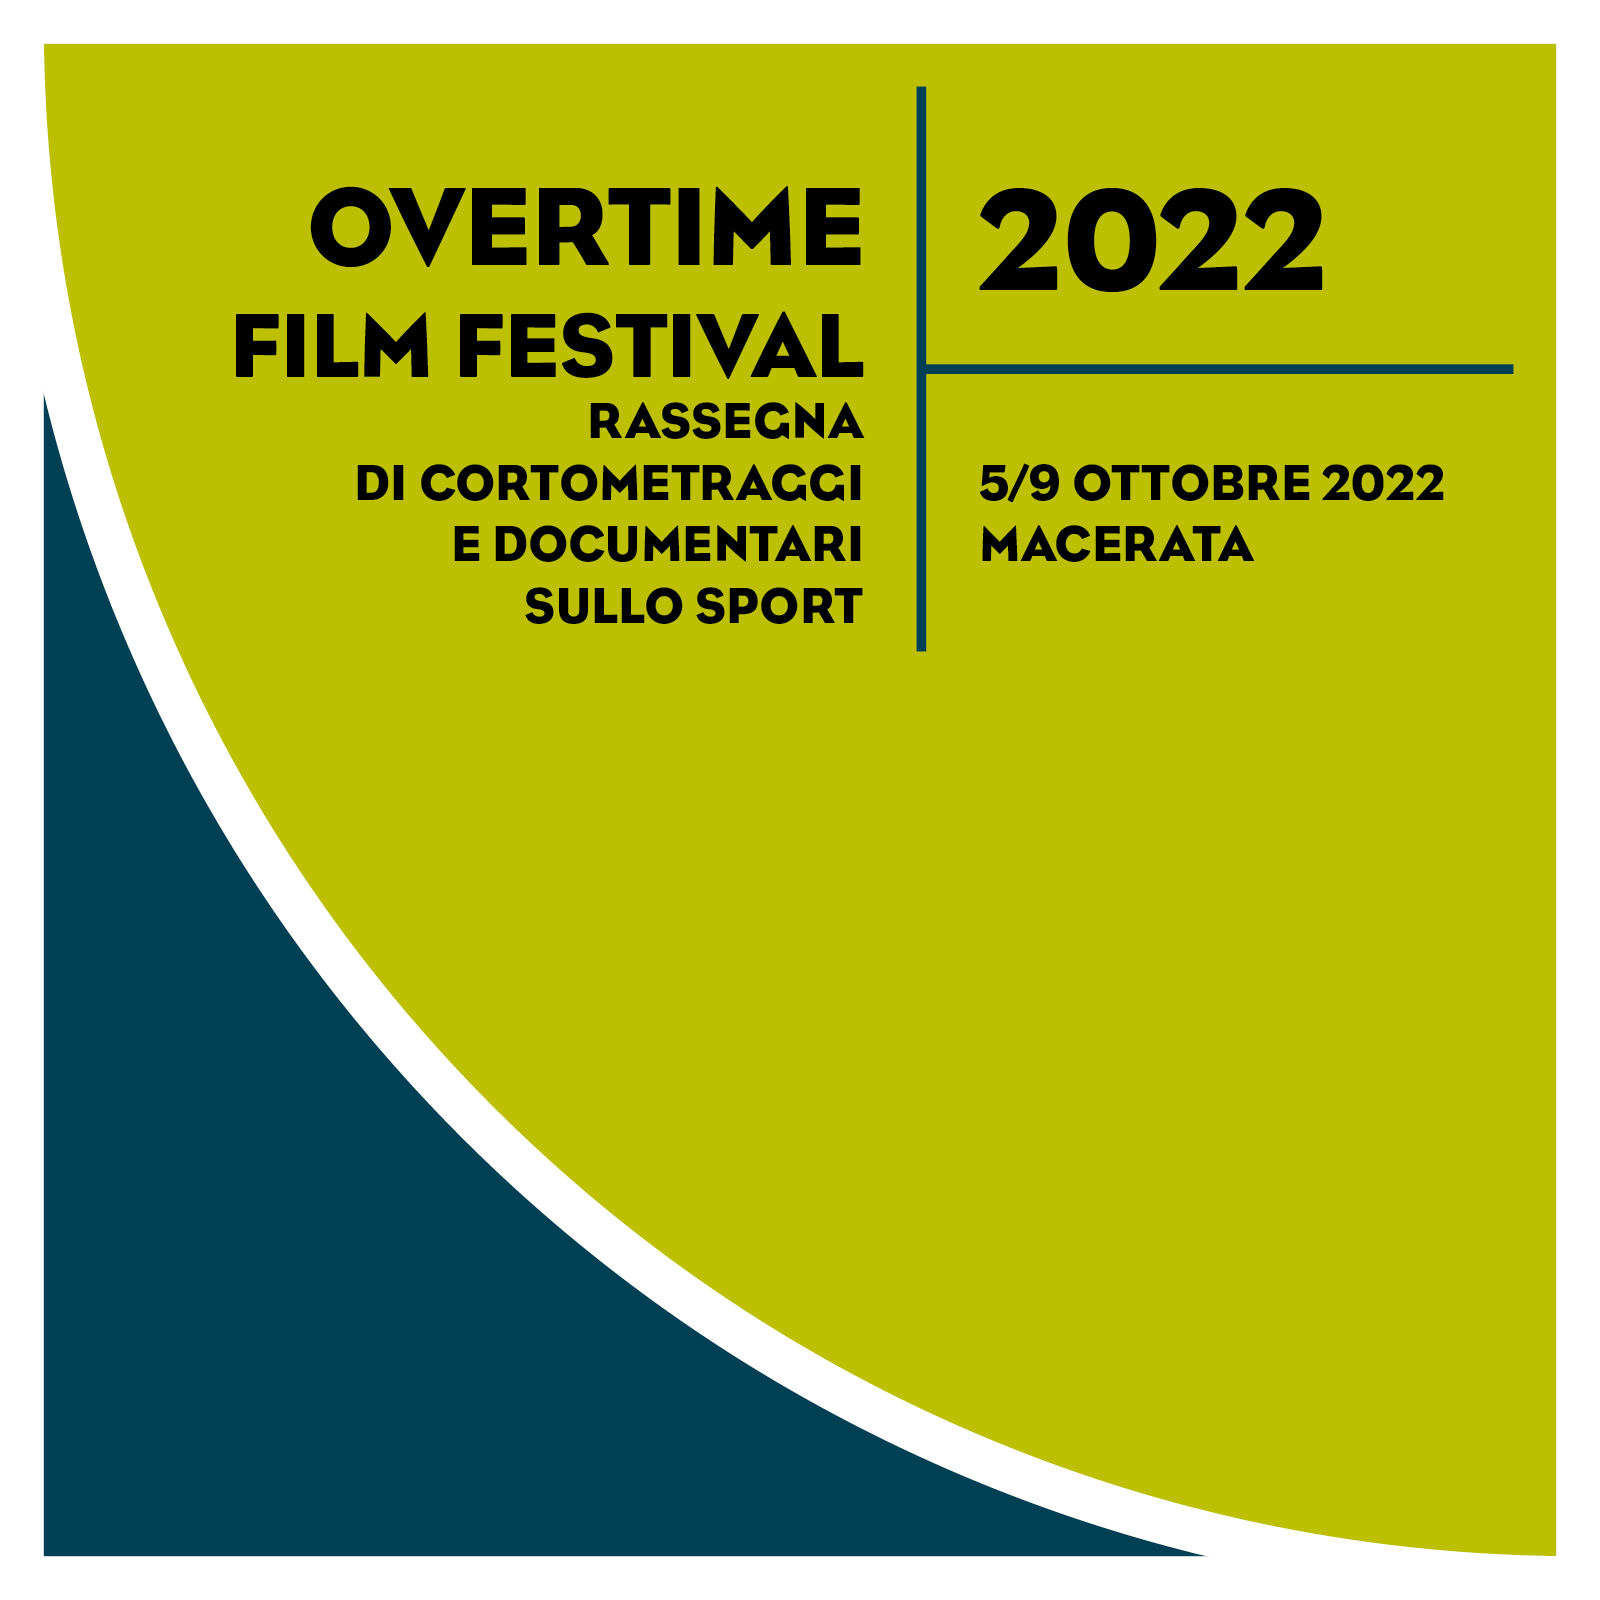 Overtime Film Festival 2022